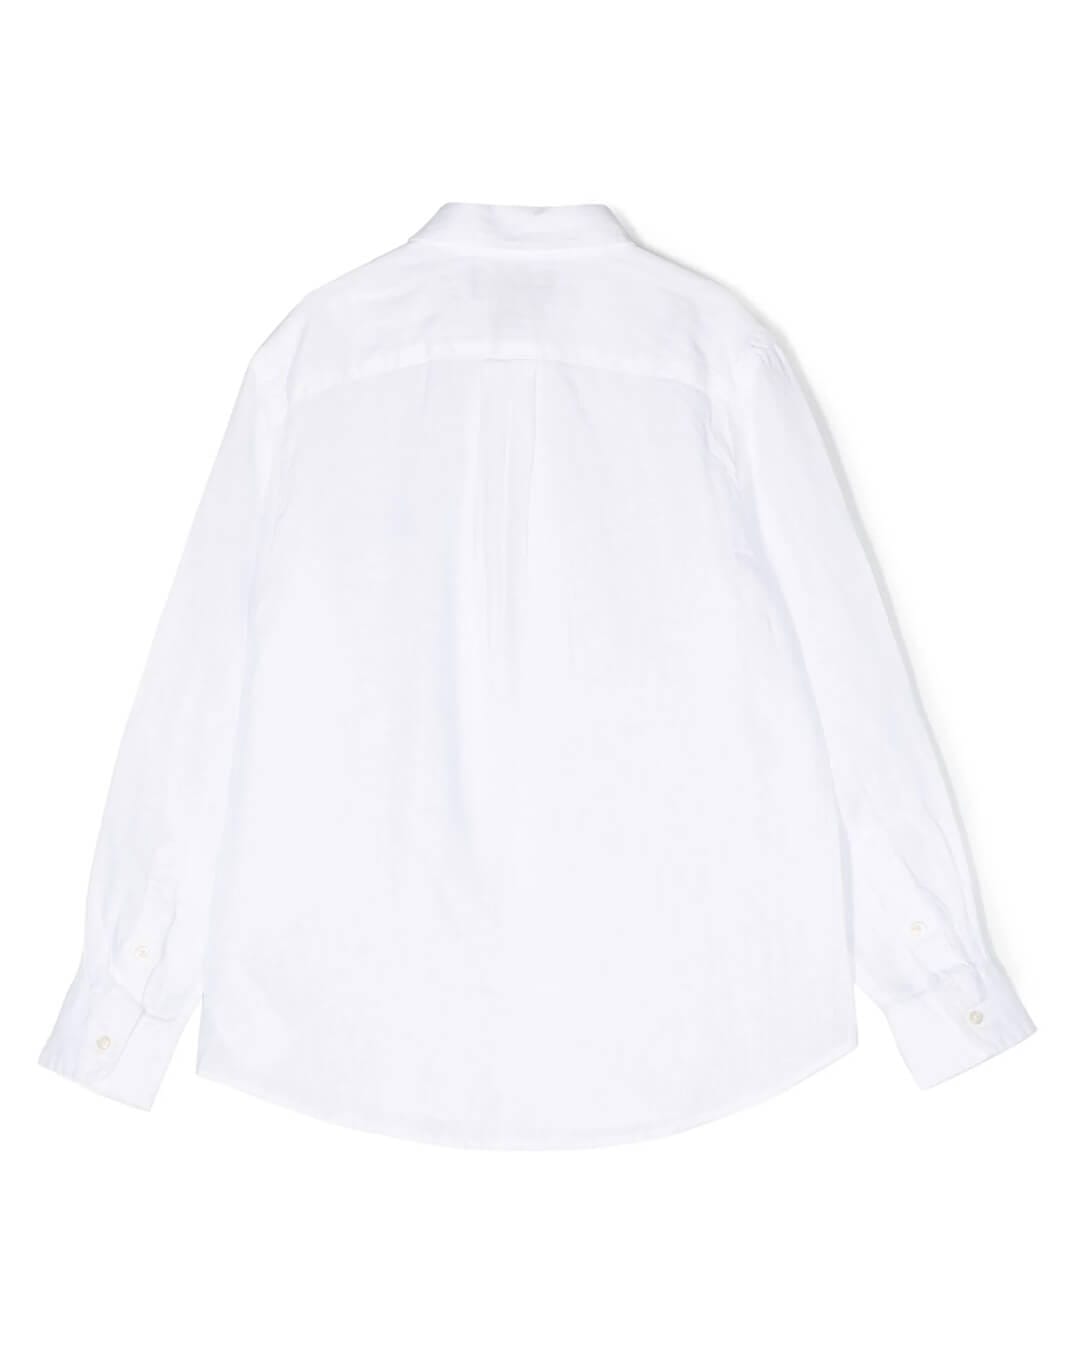 Polo Ralph Lauren T-Shirts Girls Polo Ralph Lauren White Long Sleeved Shirt